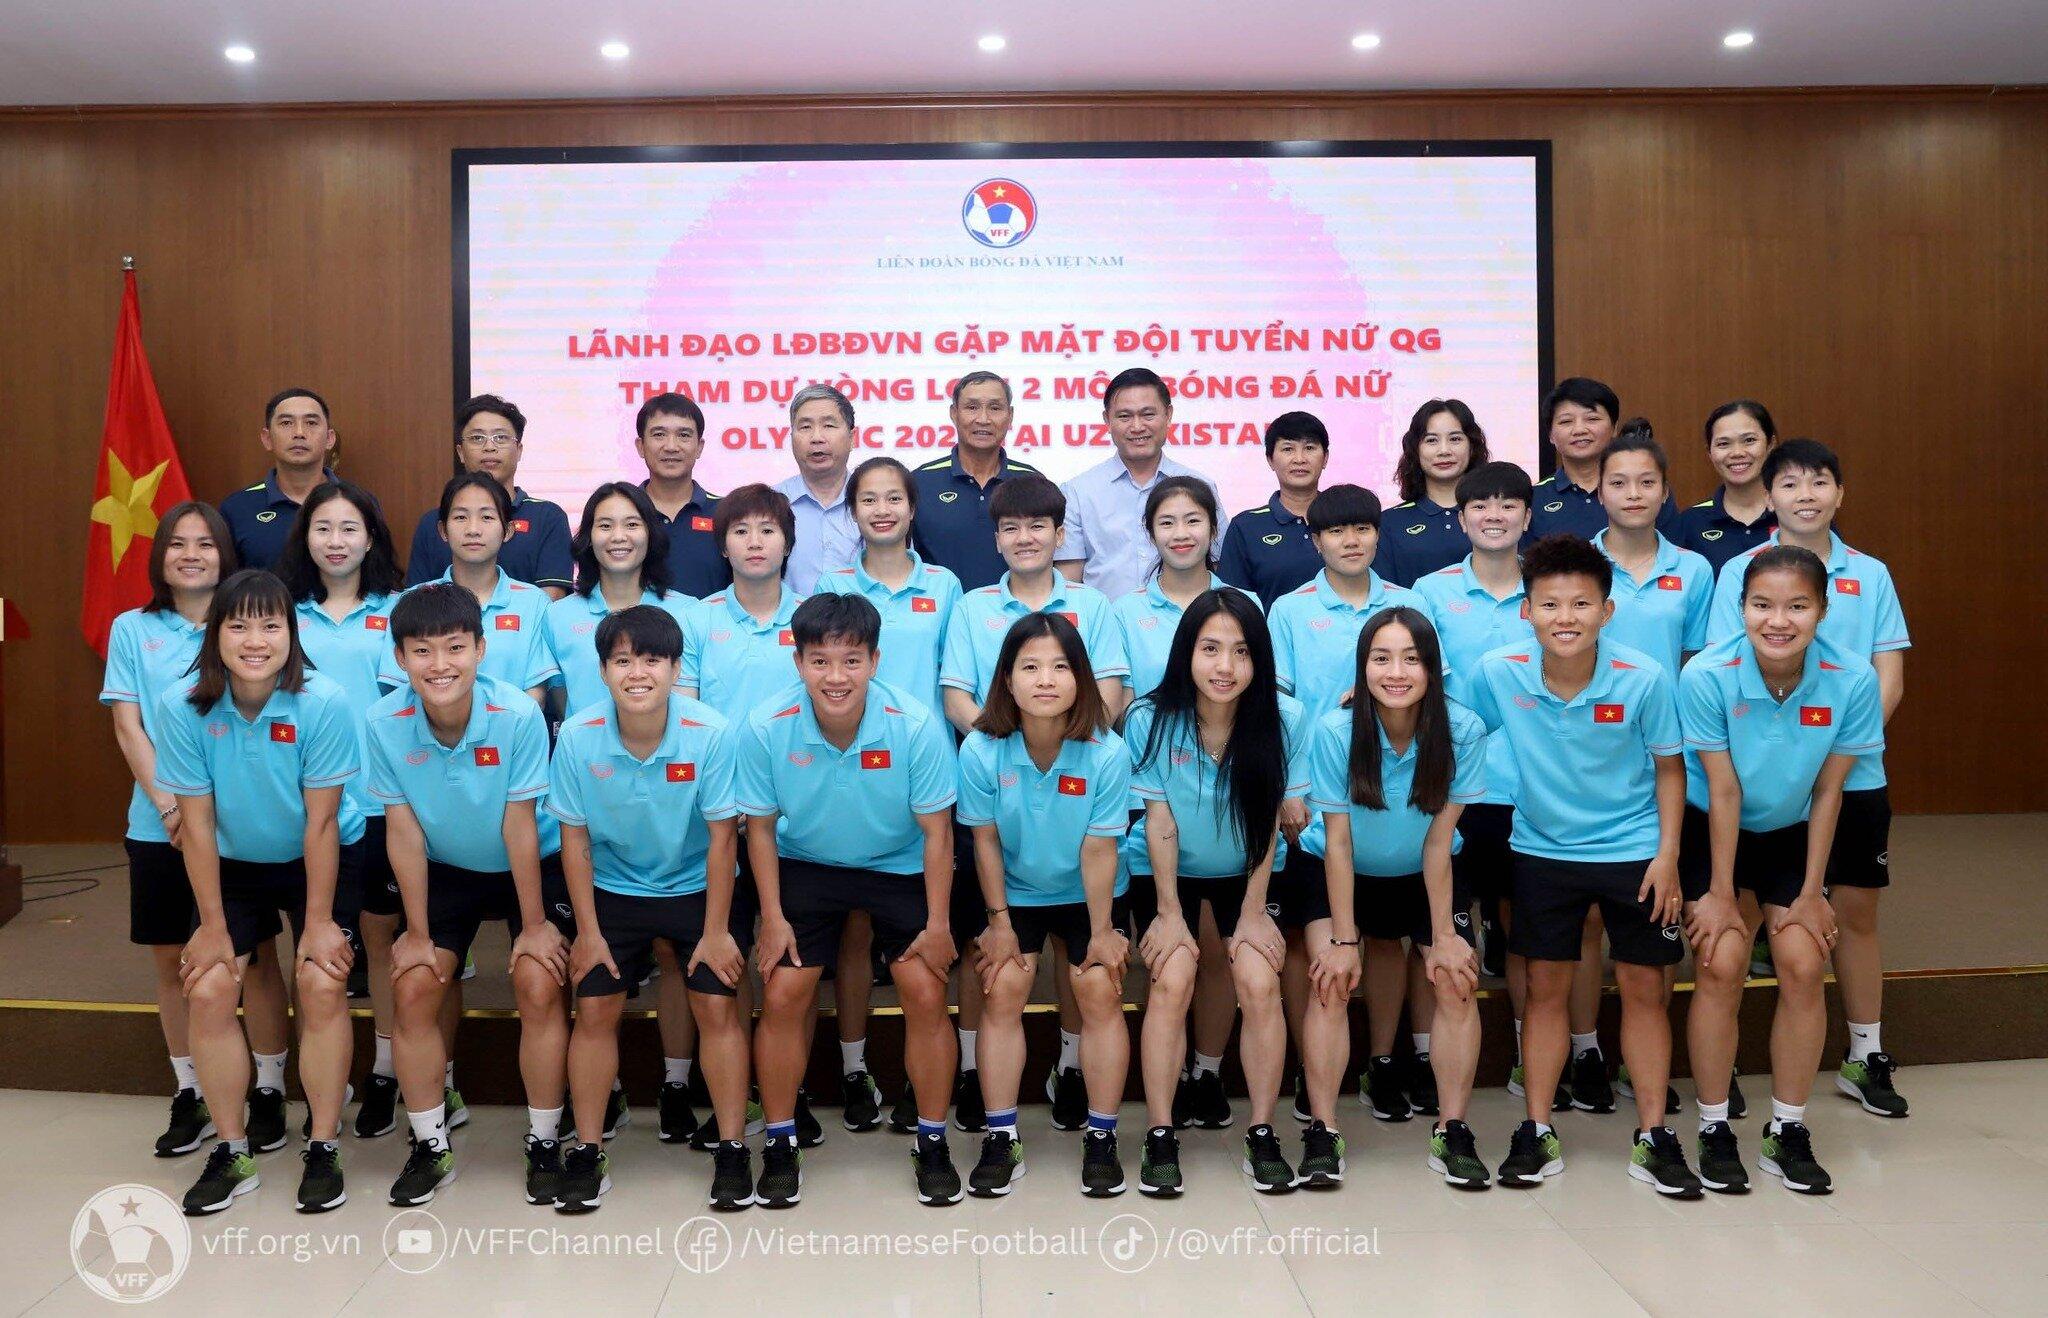 Giải đấu cuối cùng HLV Mai Đức Chung dẫn dắt đội tuyển Việt Nam (Ảnh: Internet)